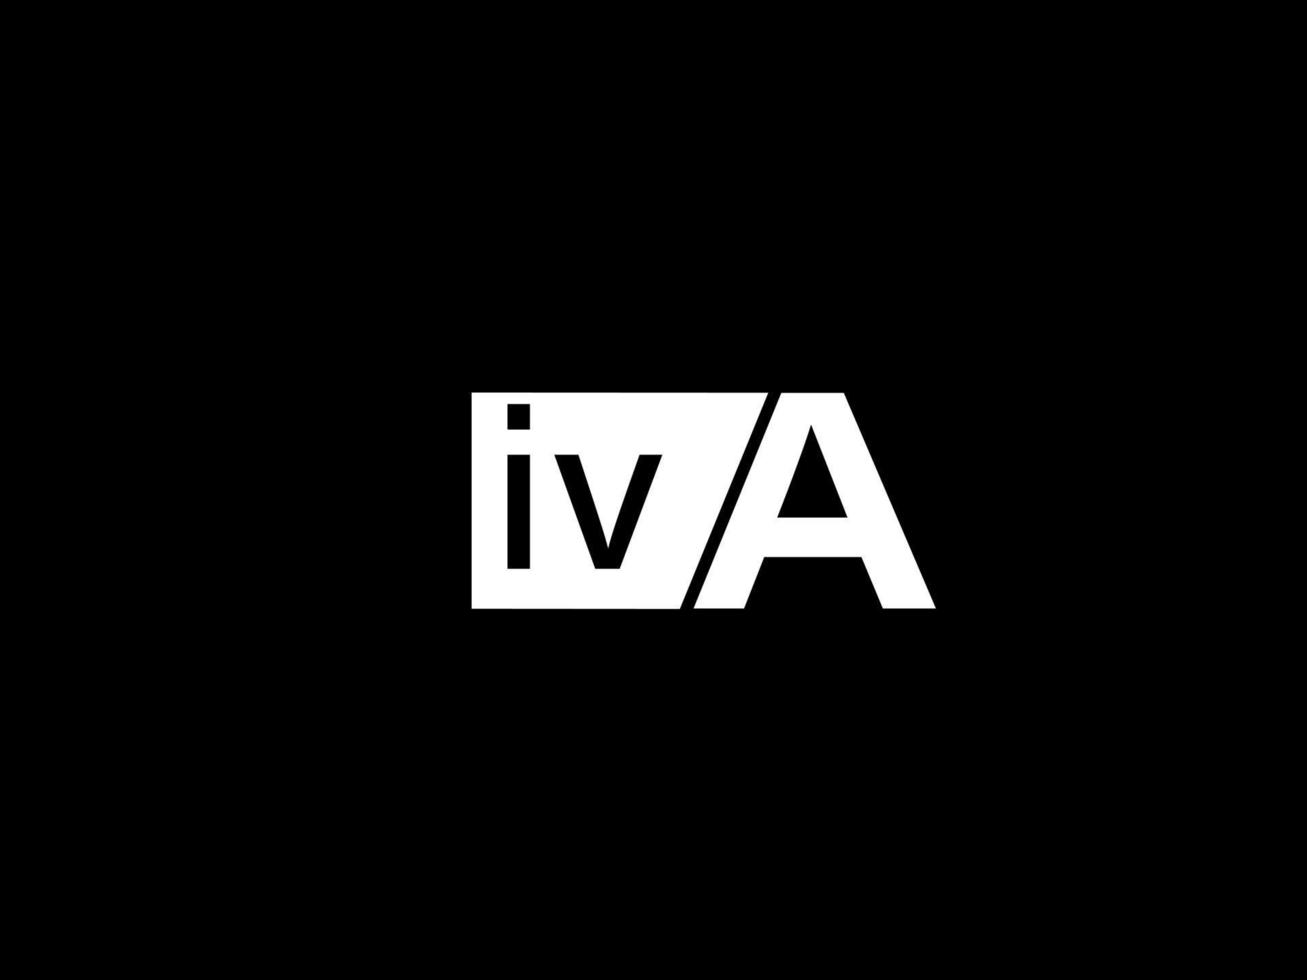 logo iva et art vectoriel de conception graphique, icônes isolées sur fond noir